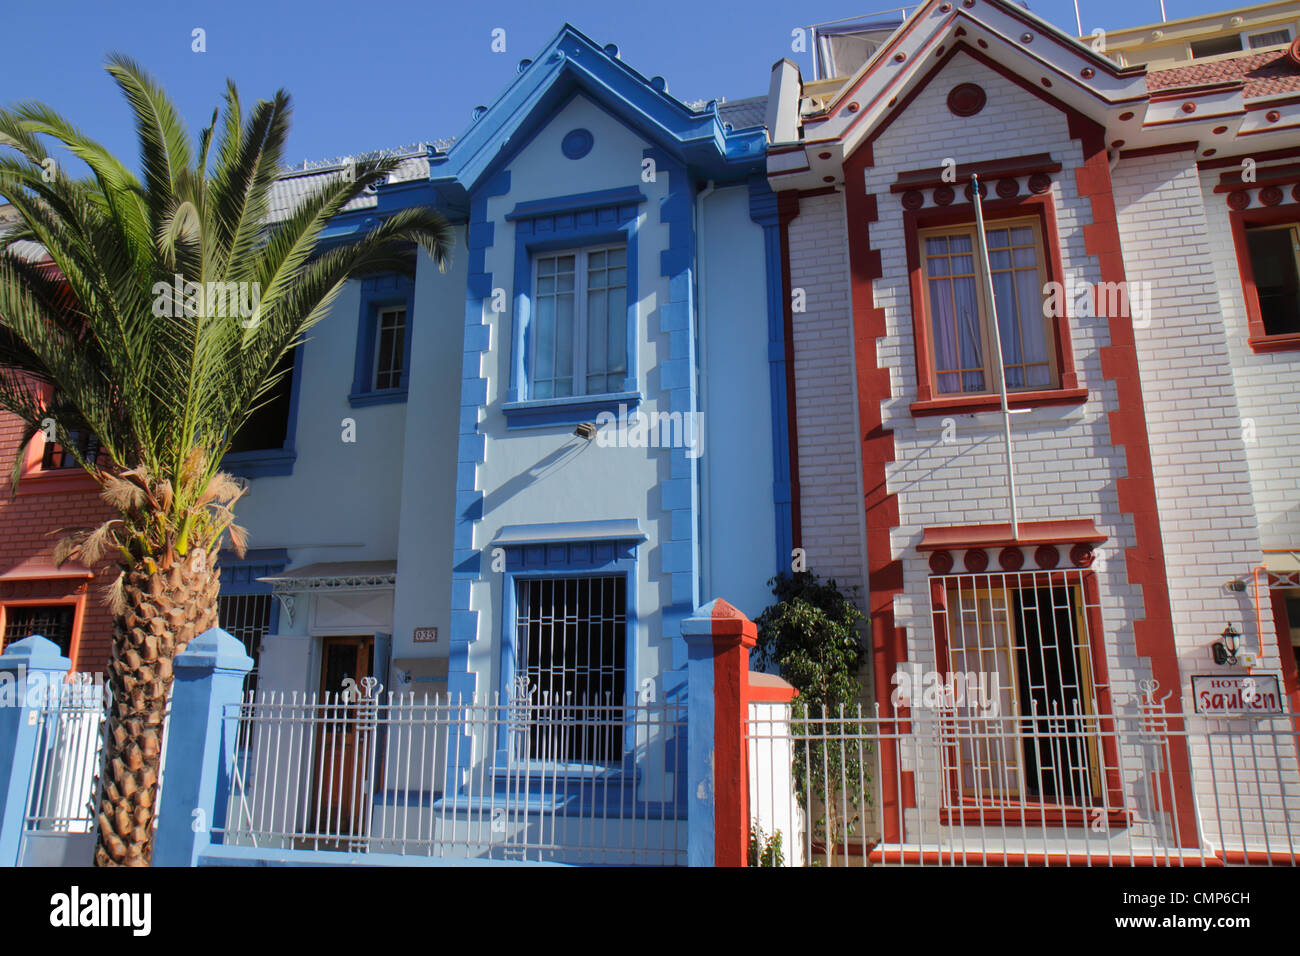 Santiago Chile, Providencia, Vina del Mar, Nachbarschaft, Gehäuse, angebaute Häuser, Haus Haus Häuser Häuser Residenz, zwei Etagen, helle Farbe Farbe Arbeit, gearbeitet Stockfoto